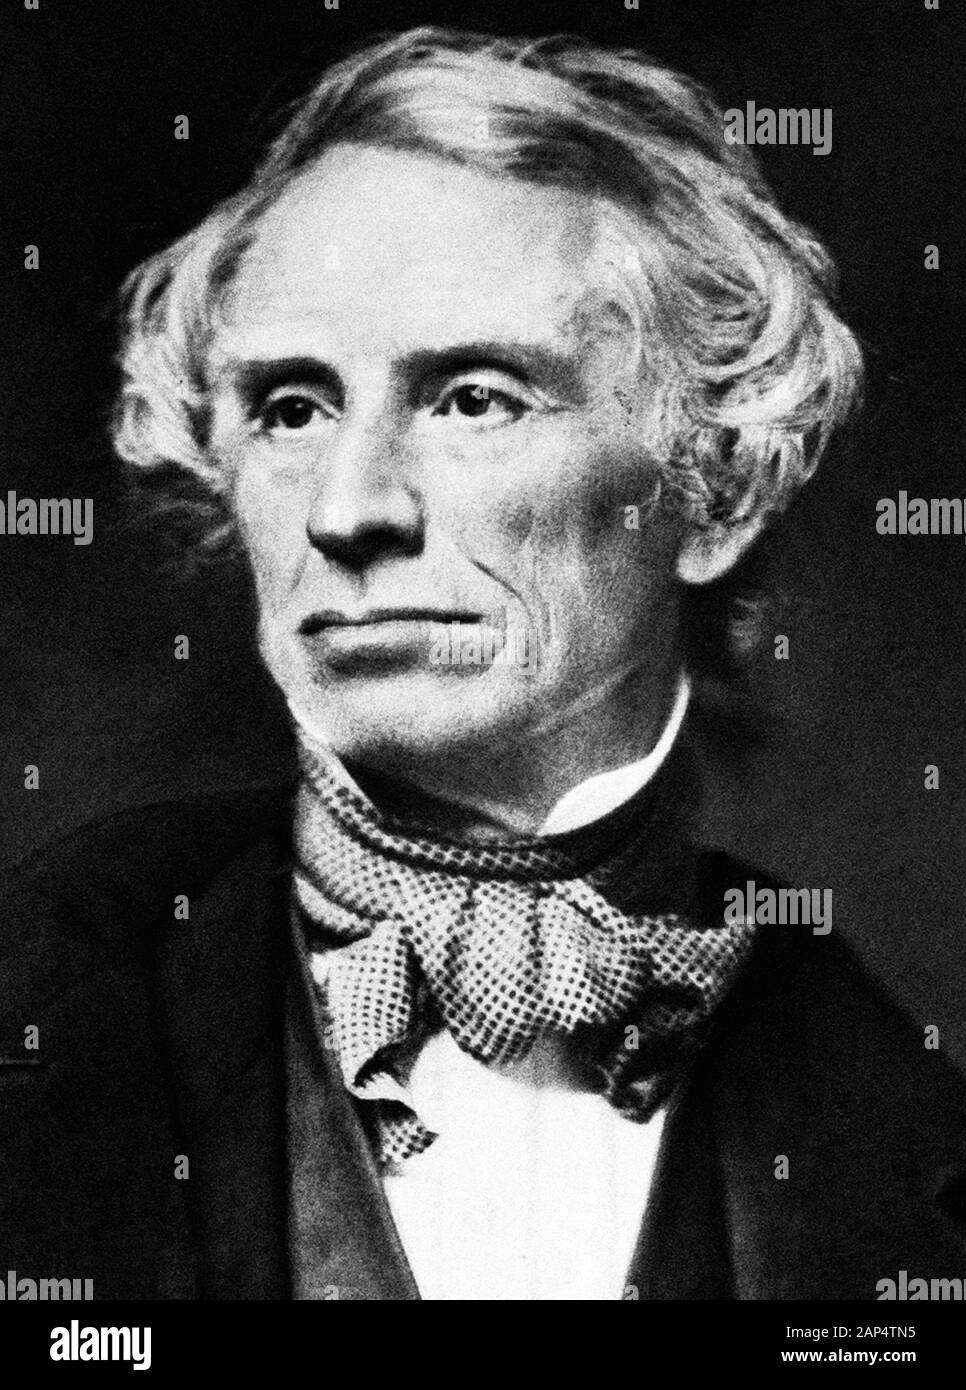 Vintage-Porträt des amerikanischen Malers und Erfinders Samuel F B Morse (170-1872) - ein Pionier in der Entwicklung des elektrischen Telegrafen und Mitschöpfers von Morse Code. Foto von Mathew B Brady um das Jahr 1855. Stockfoto